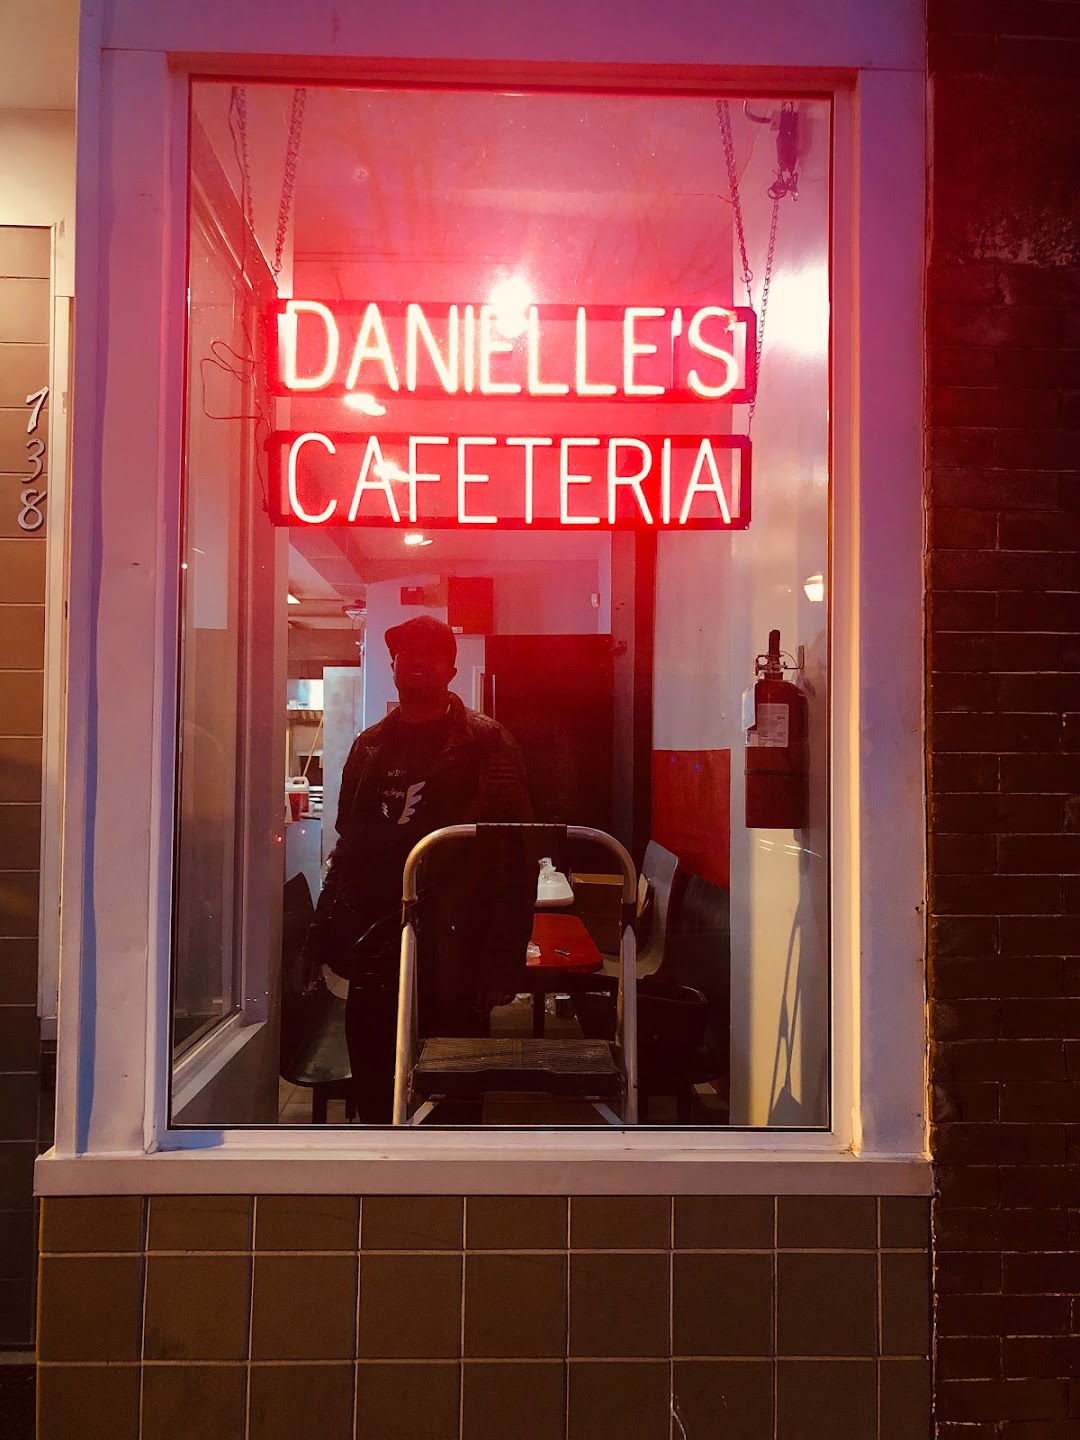 Danielles Cafeteria